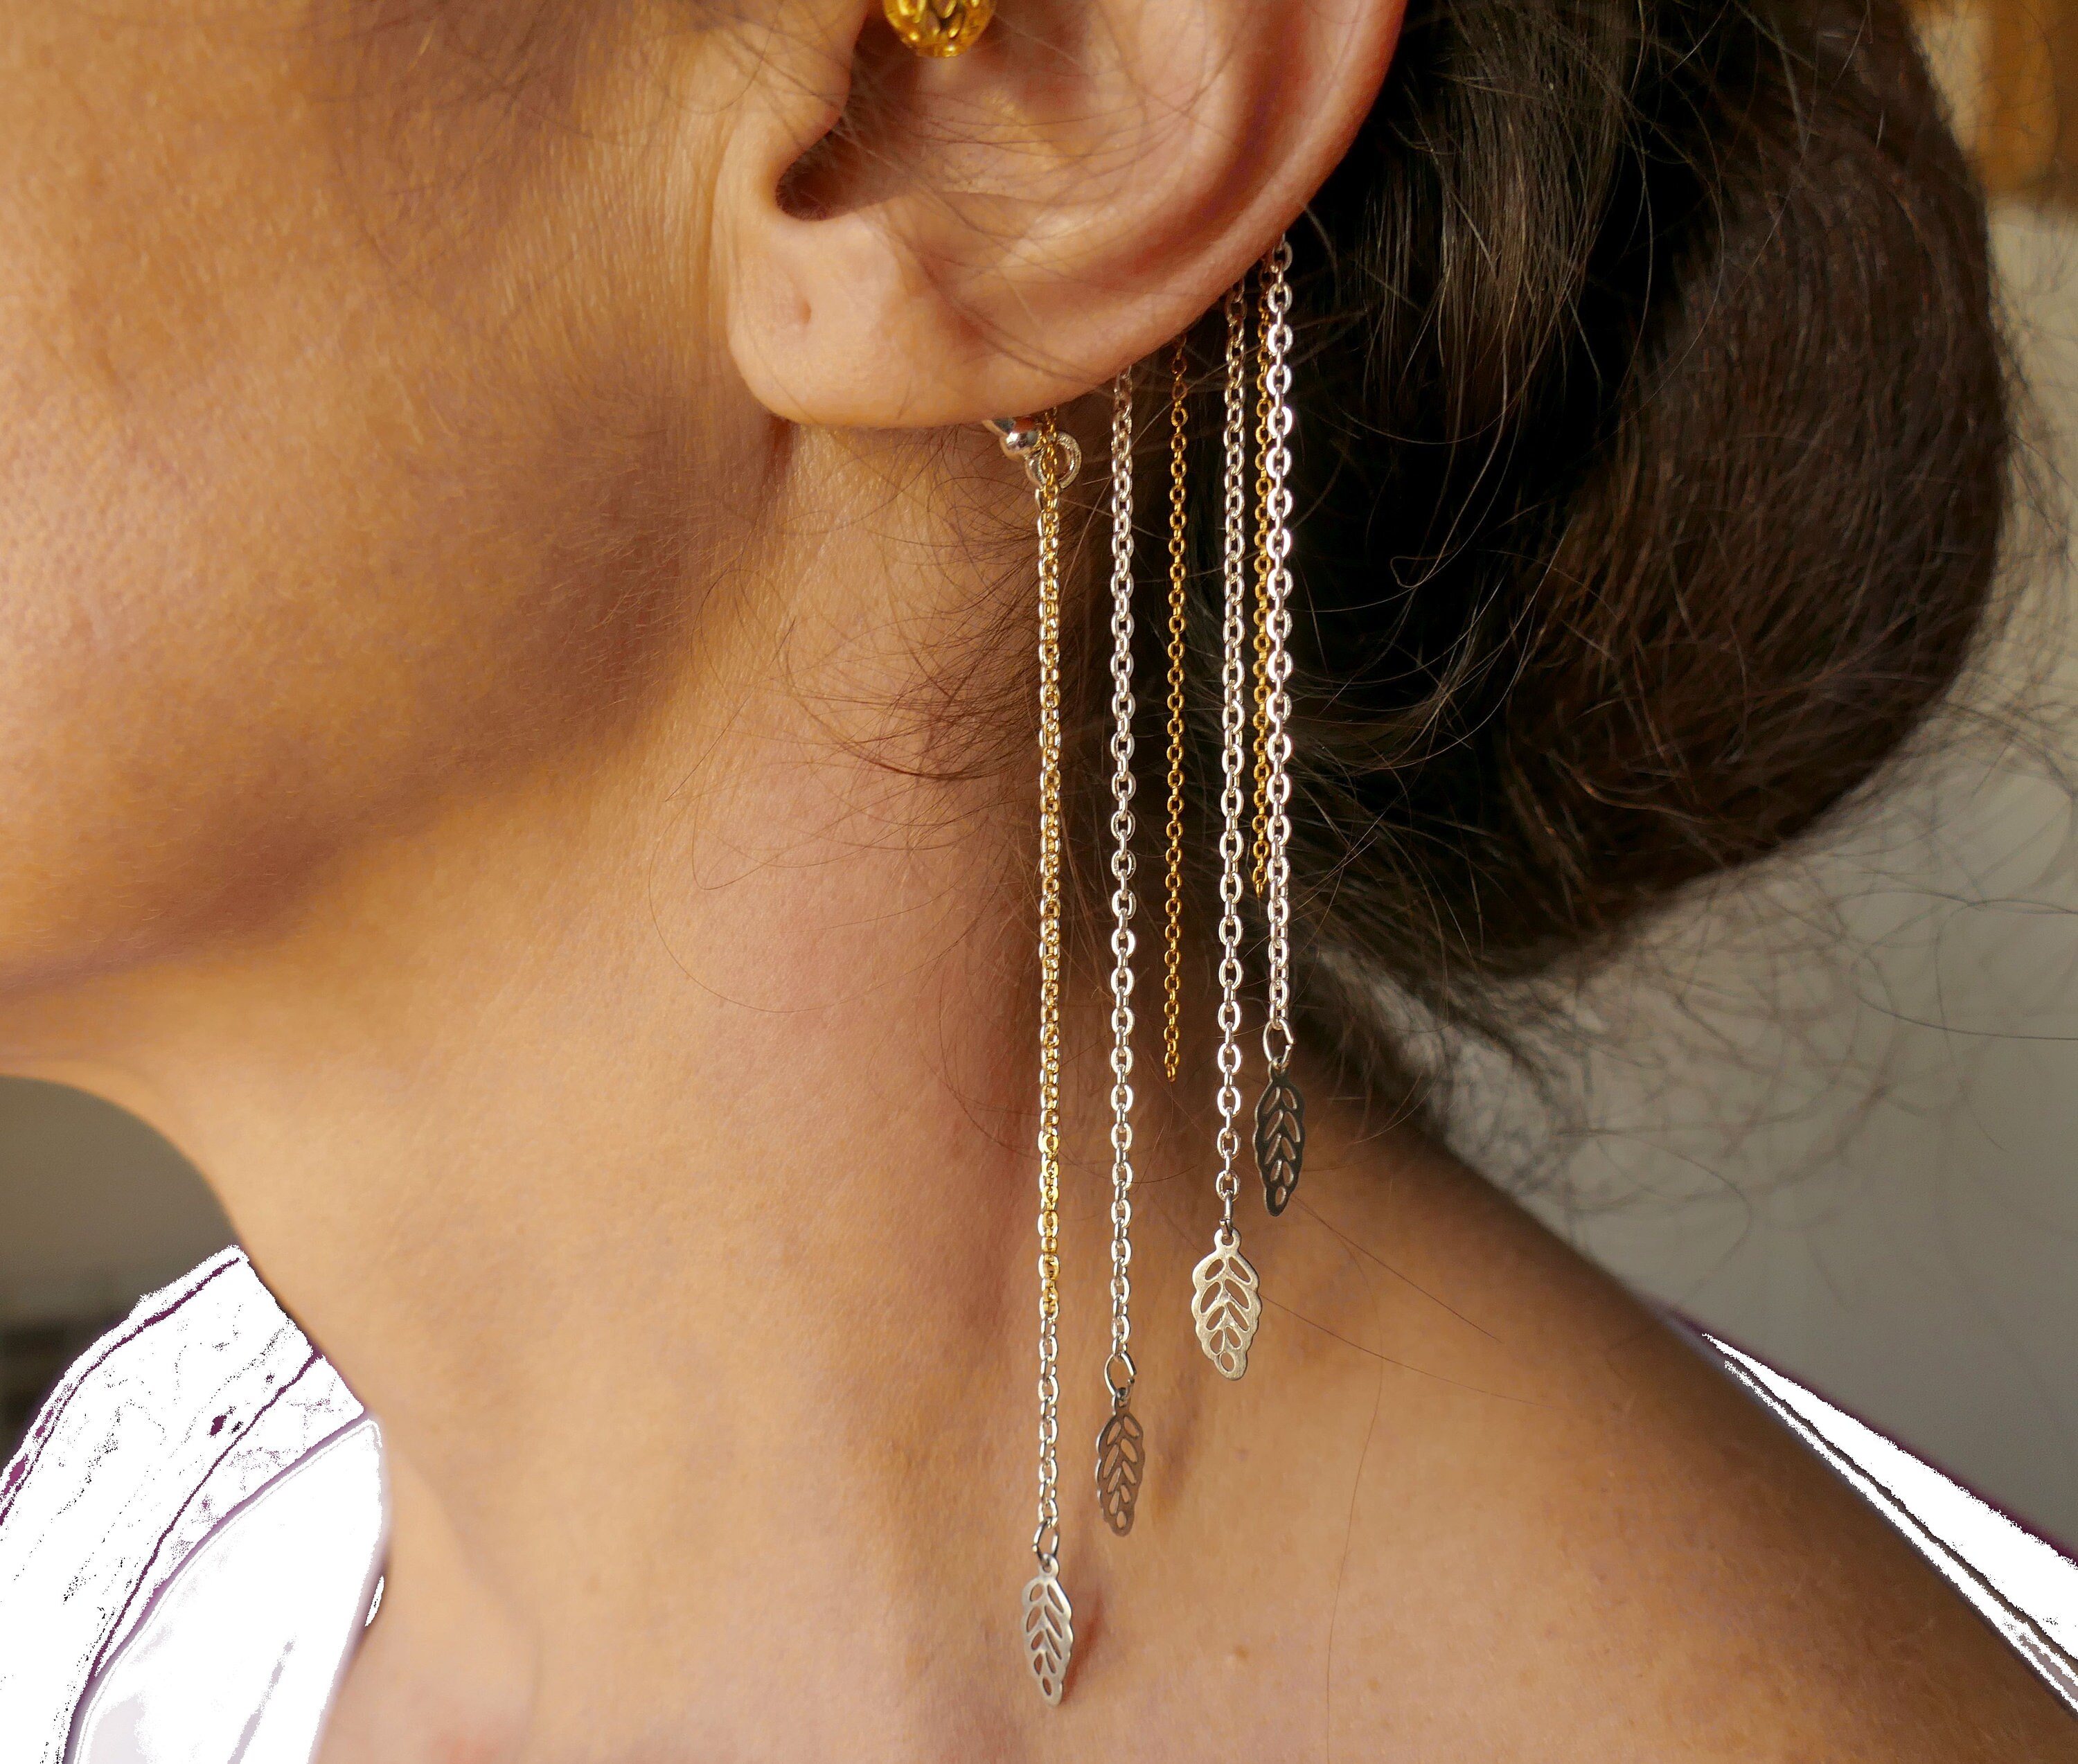 Ymqewq Kenfery Gothic Long Tassel Ear Cuff Wrap 1pcs Non-Piercing Crystal  Pearl Drop Dangle Earrings…See more Ymqewq Kenfery Gothic Long Tassel Ear